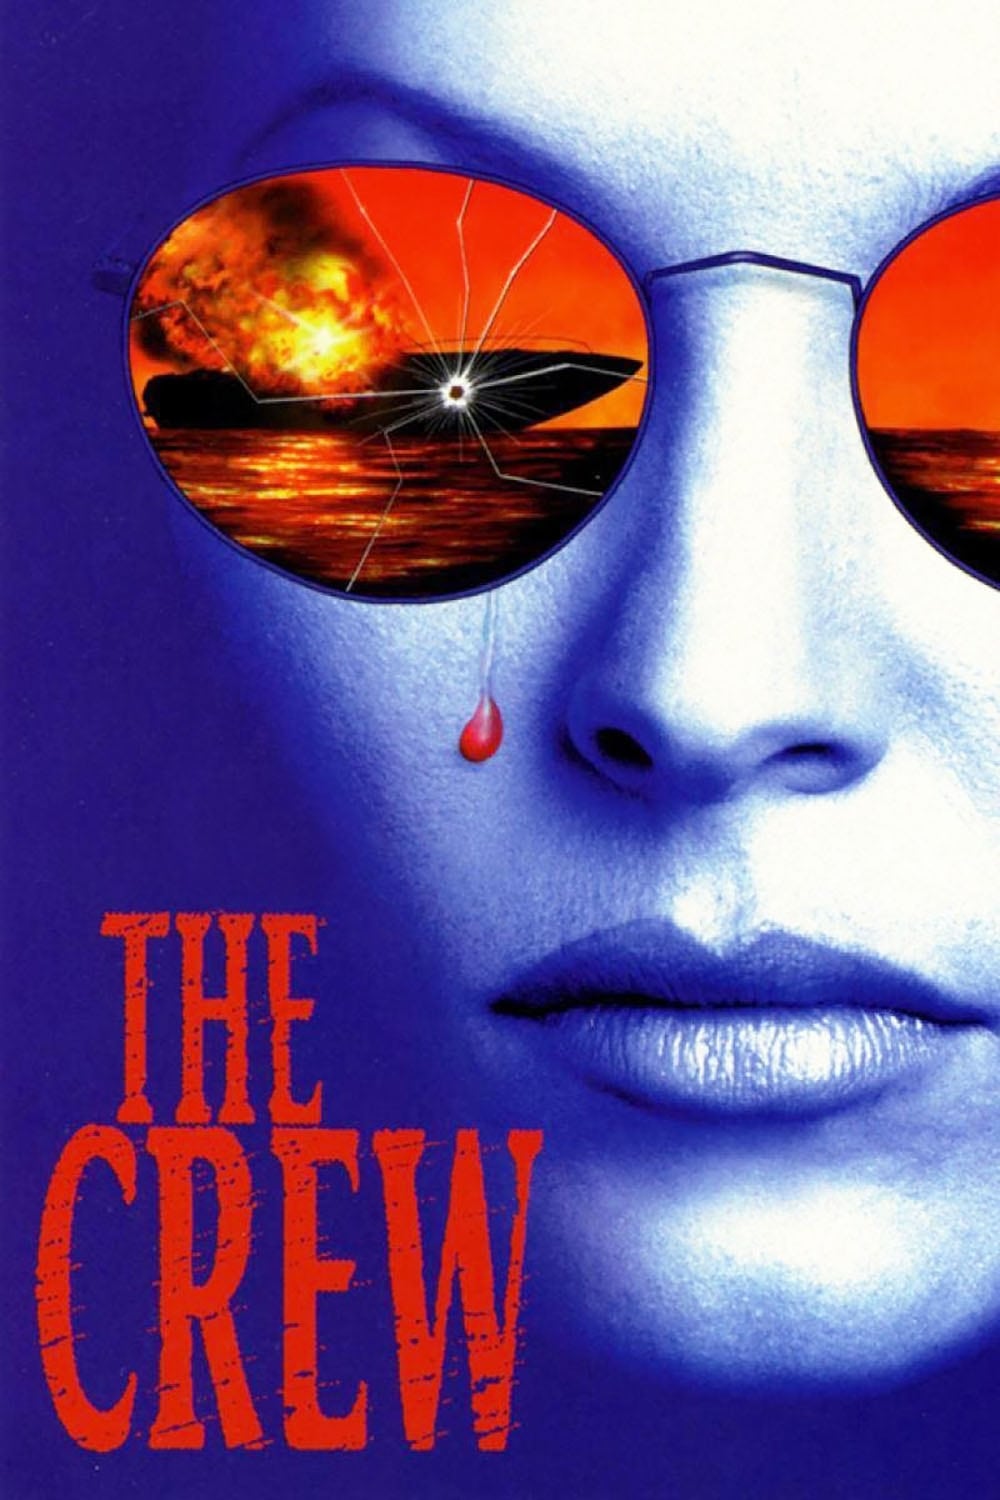 The Crew (1994)